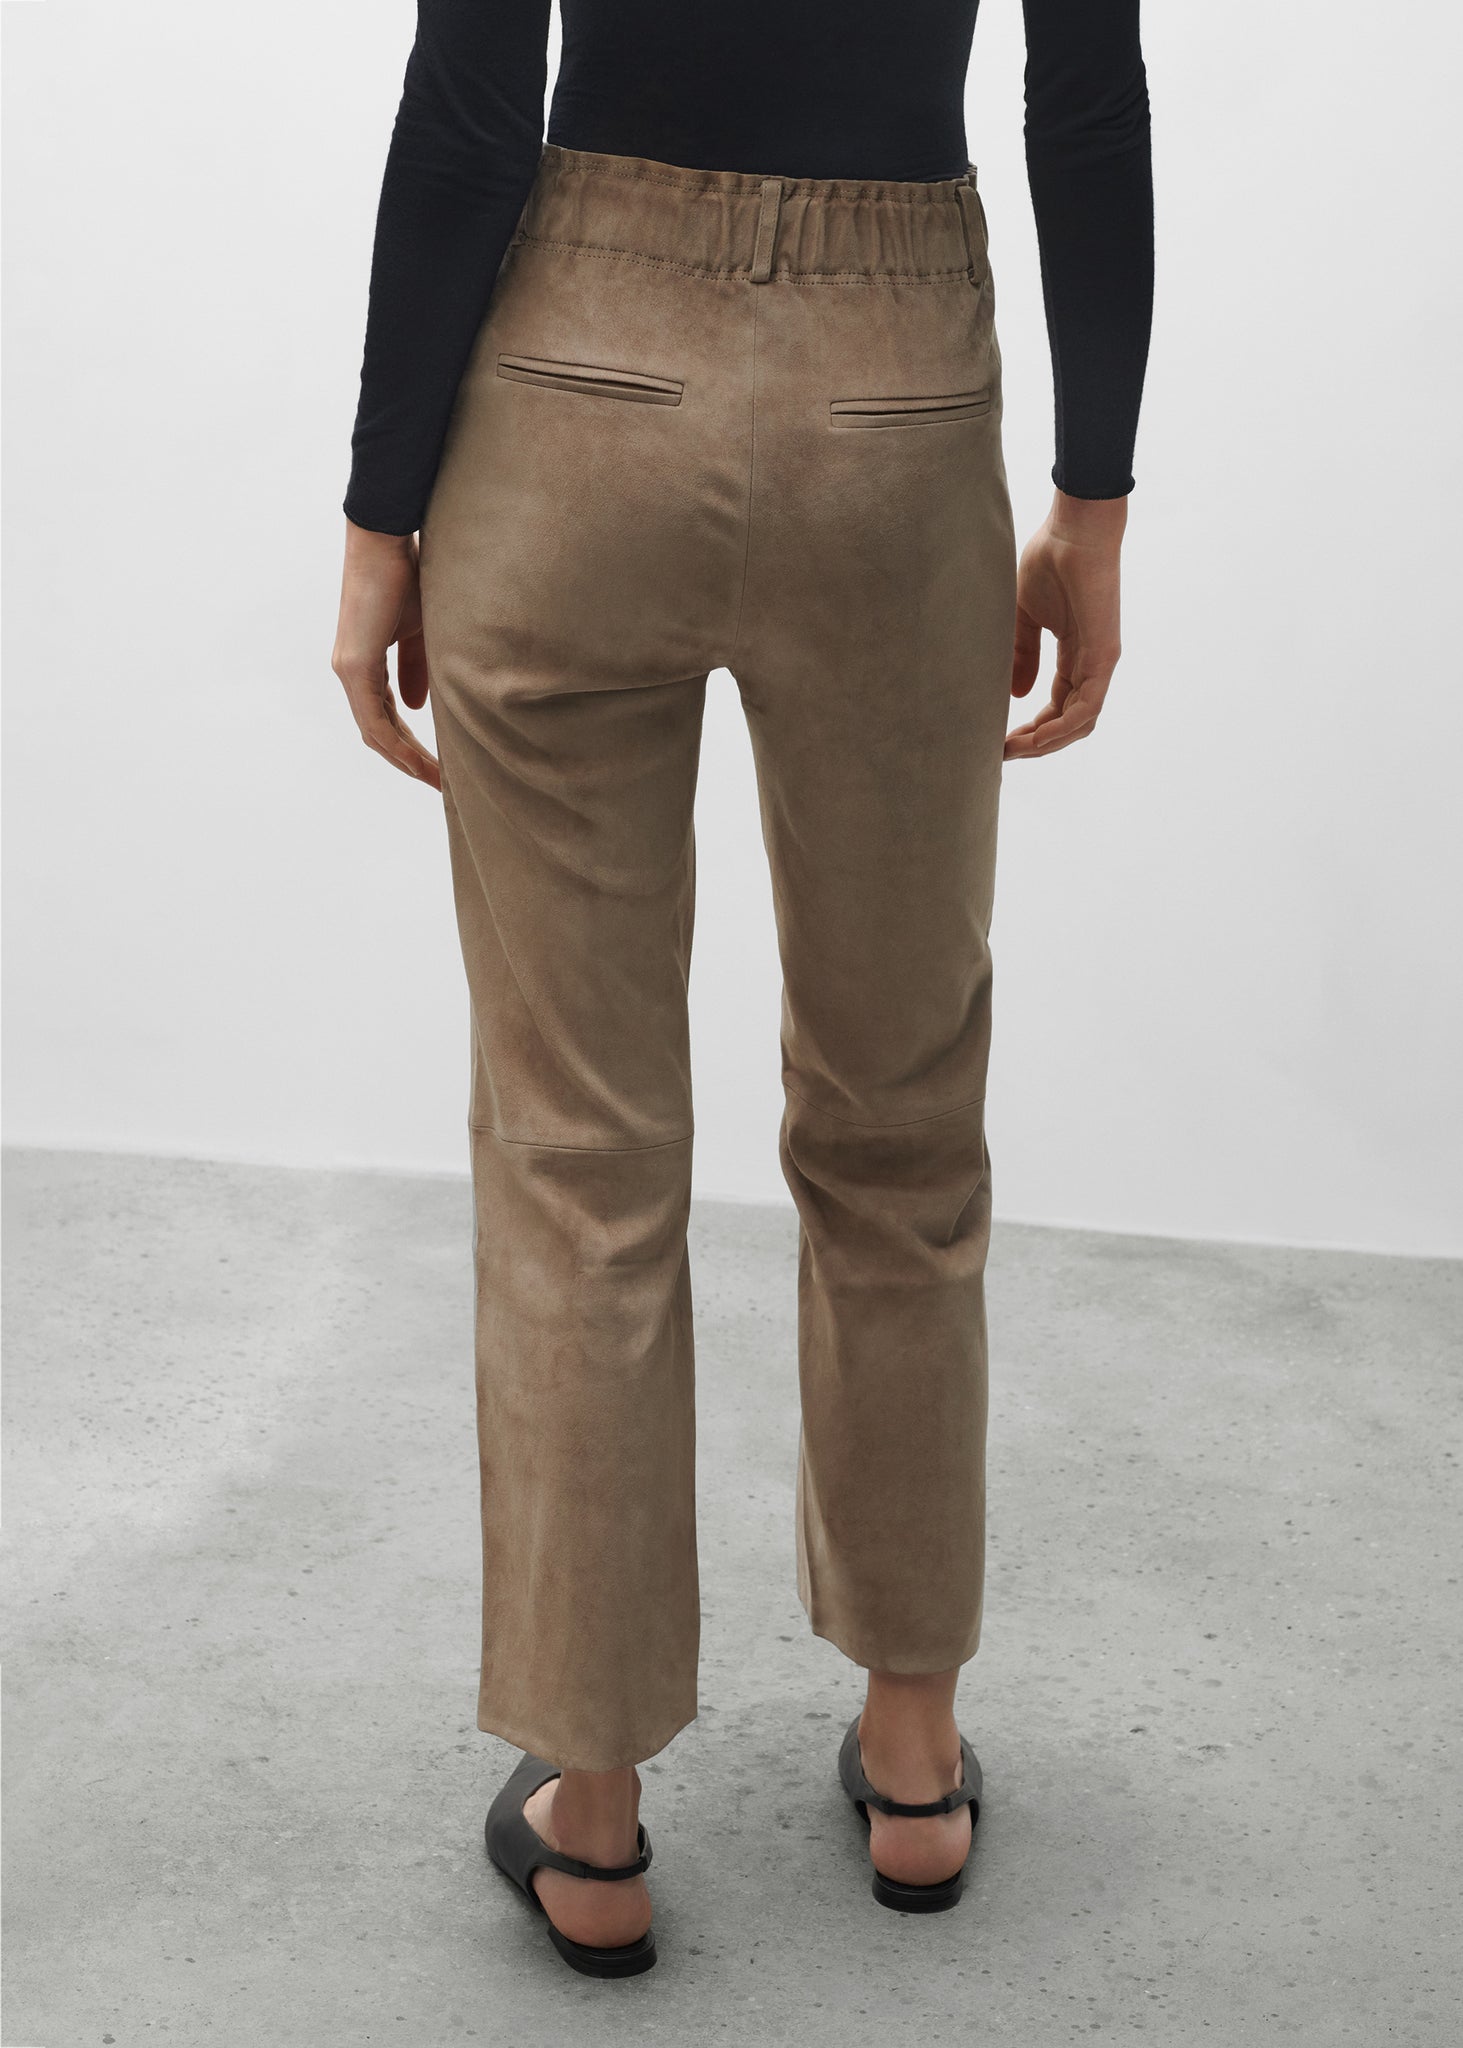 FERRARA | Suede Stretch Trousers